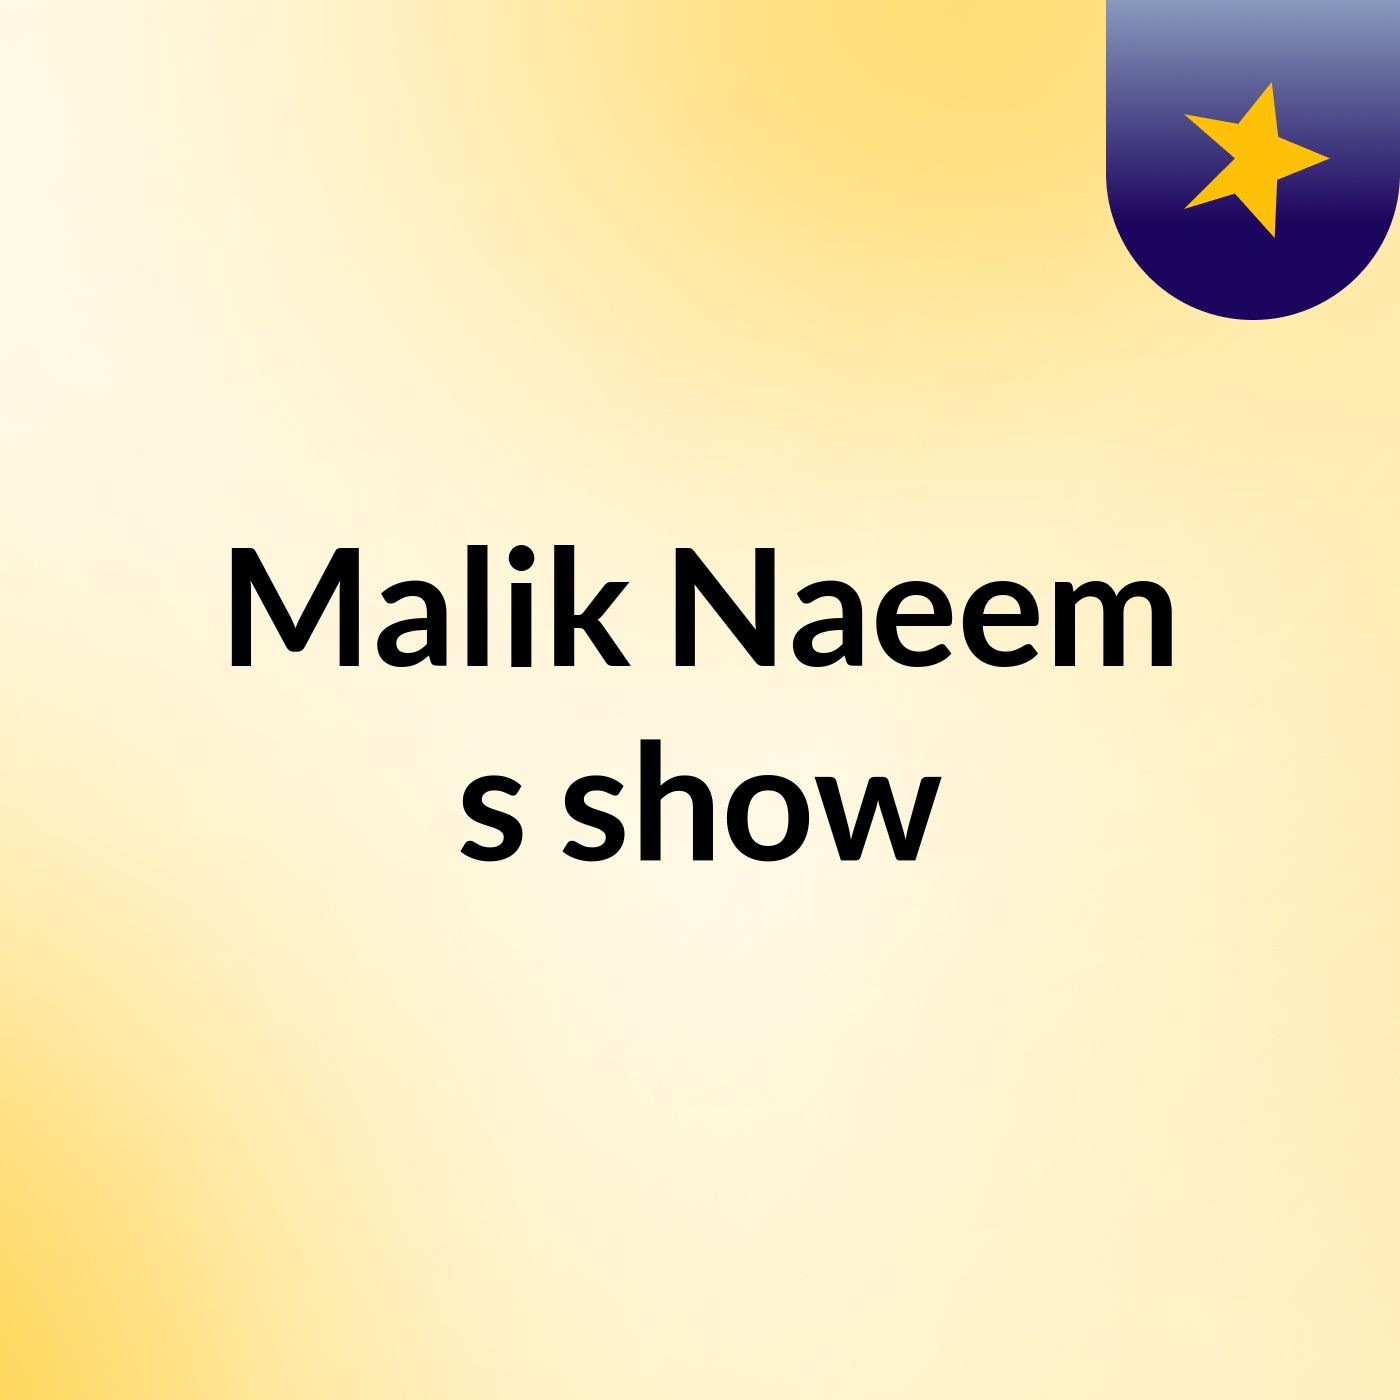 Malik Naeem's show